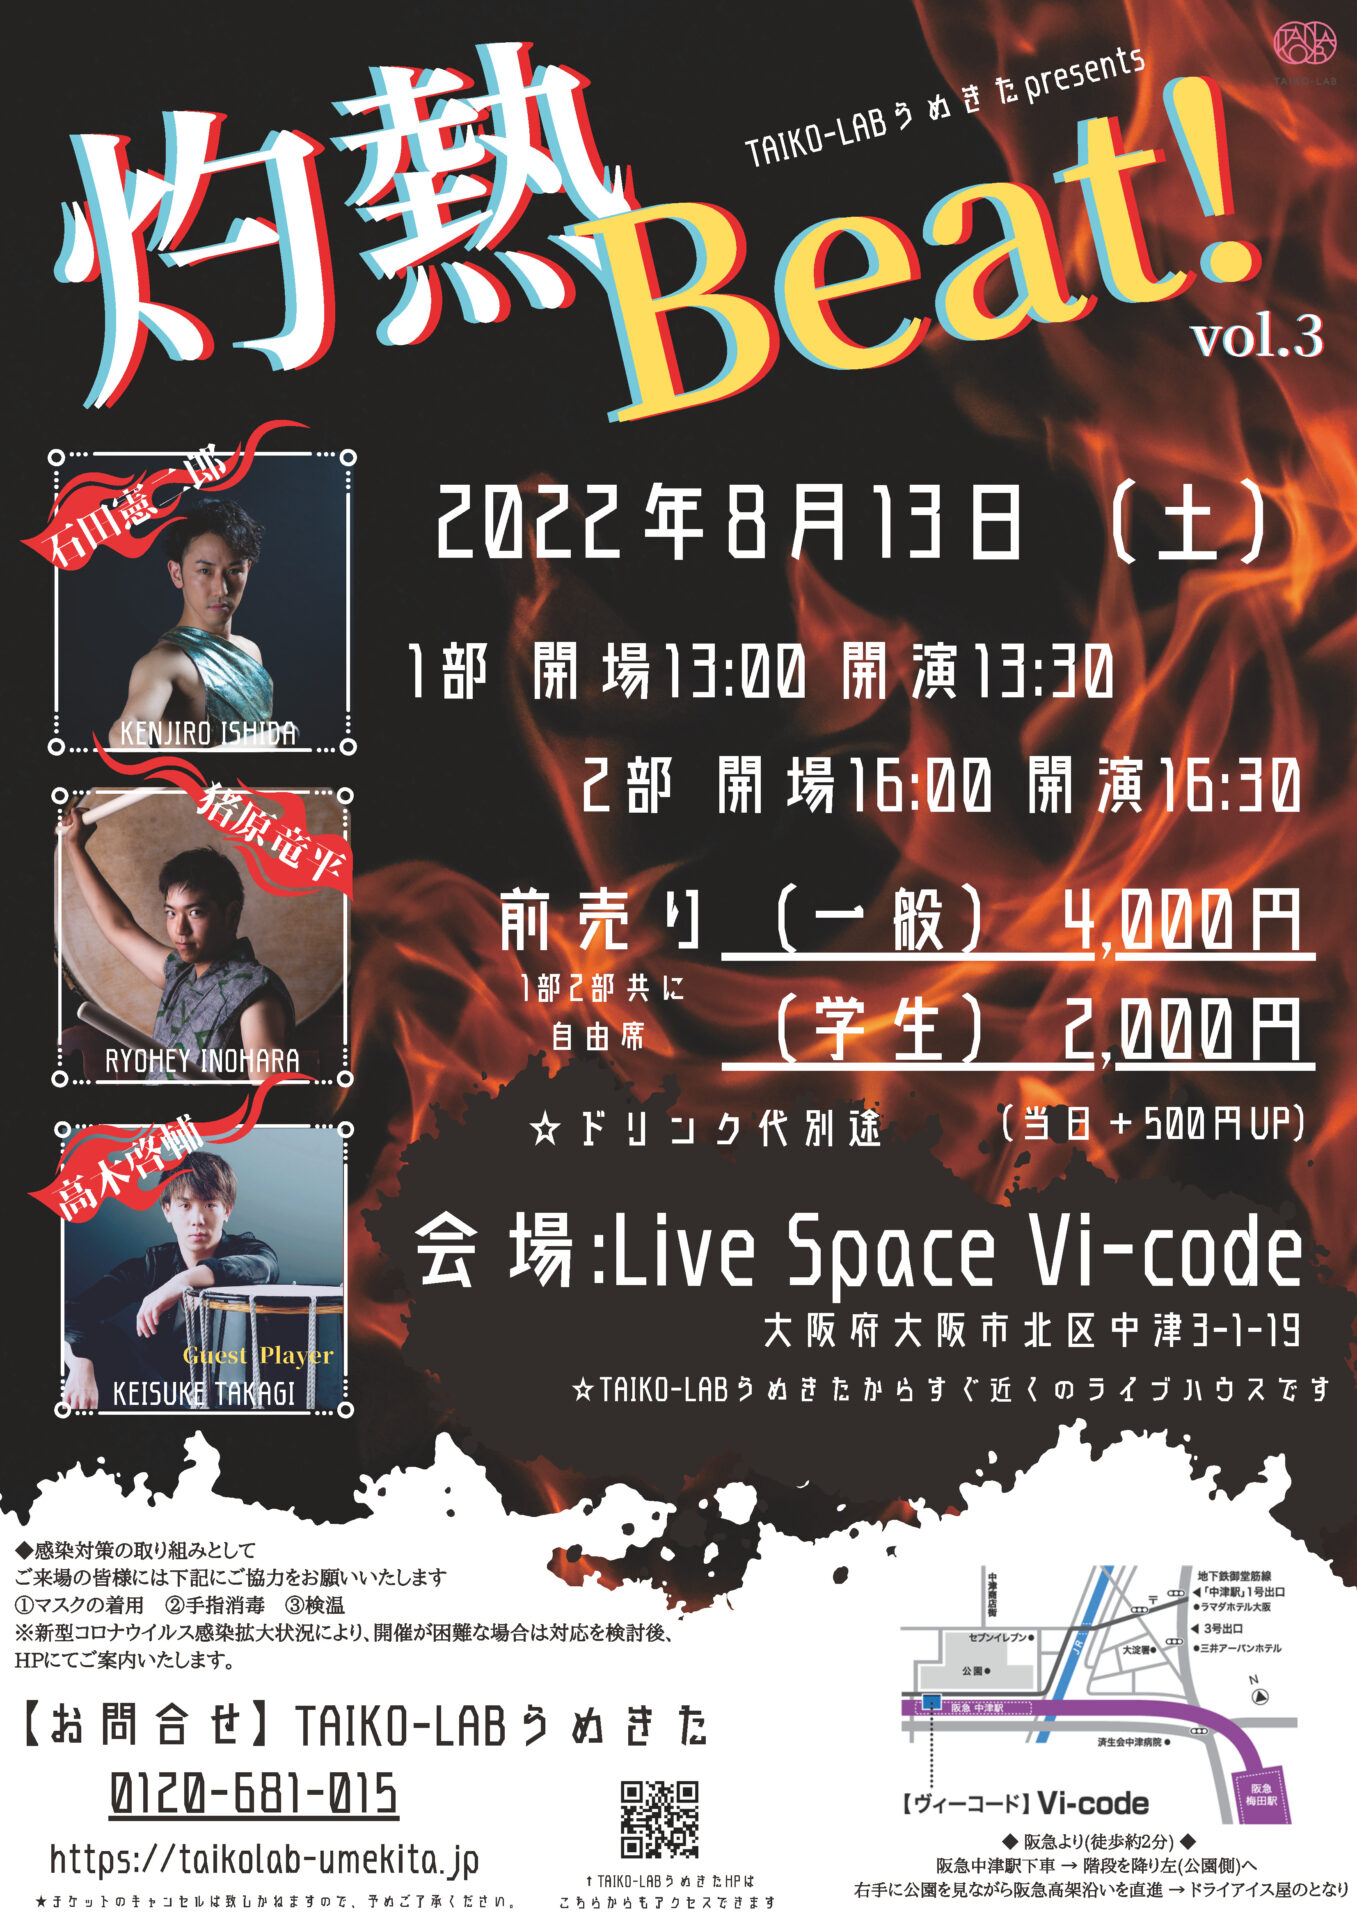 灼熱Beat! vol.3フライヤー表